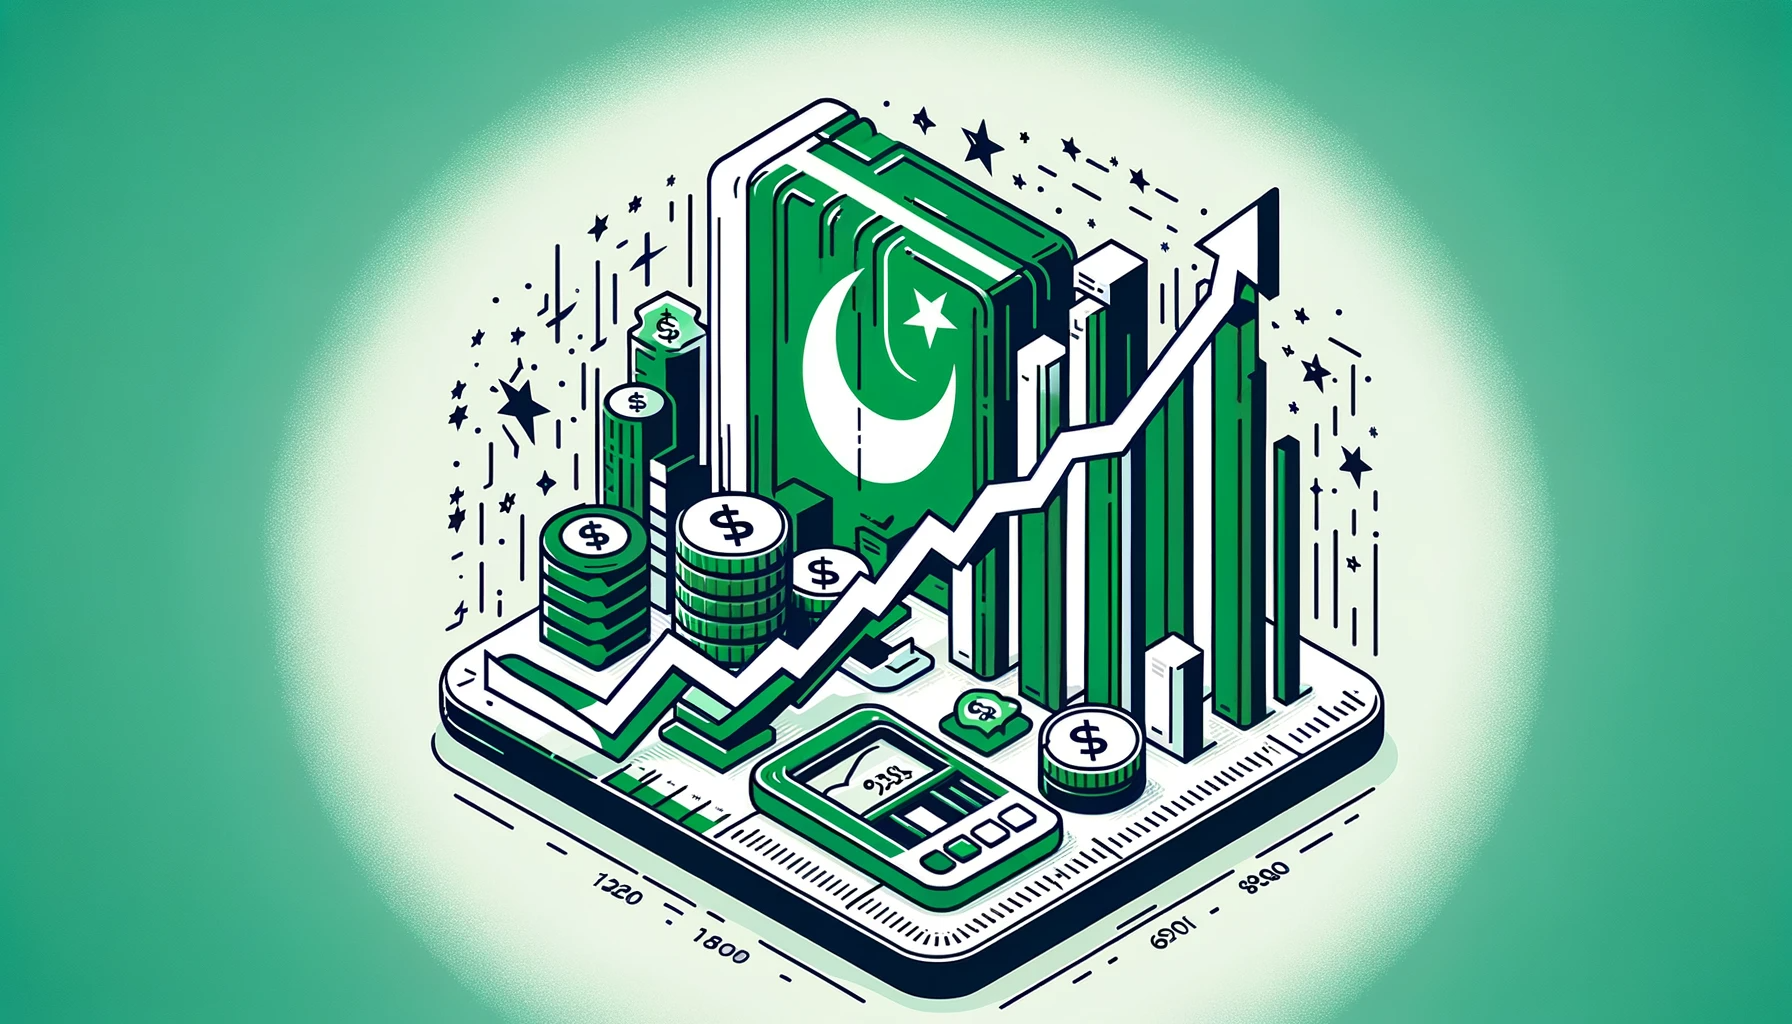 Pakistans ekonomi är påväg ner med tanke på inflationen